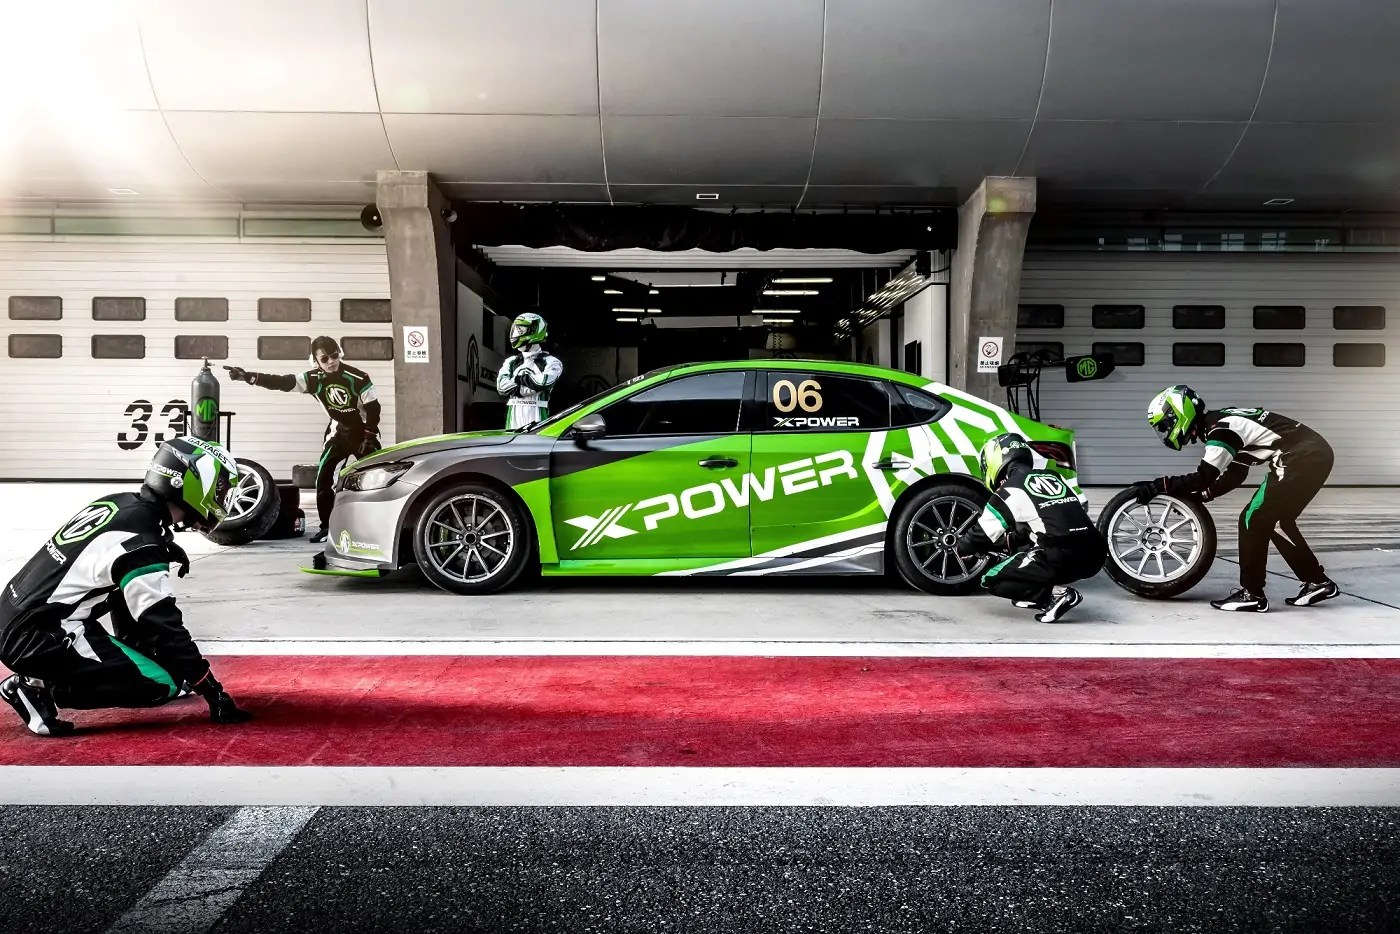 سيارات MG تعلن عن قسمها الجديد لرياضة السيارات MG XPOWER